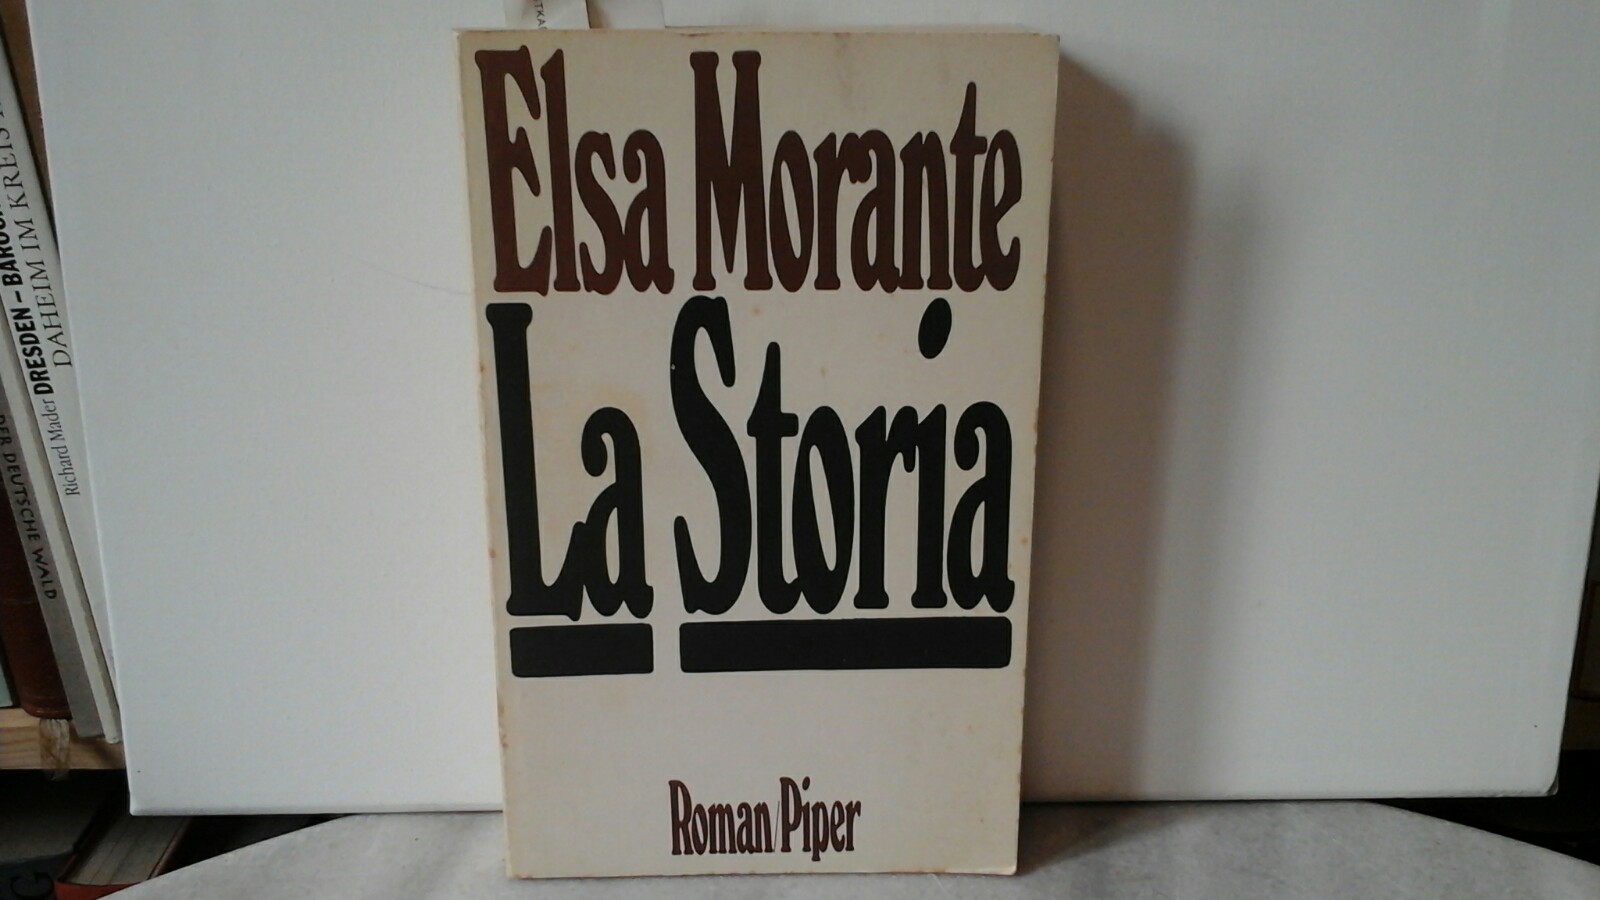 La Storia. Roman. 1. Teil des unkorrigierten, unvollständigen Leseexemplars. Leseexemplar vor der ersten /1. Ausgabe..